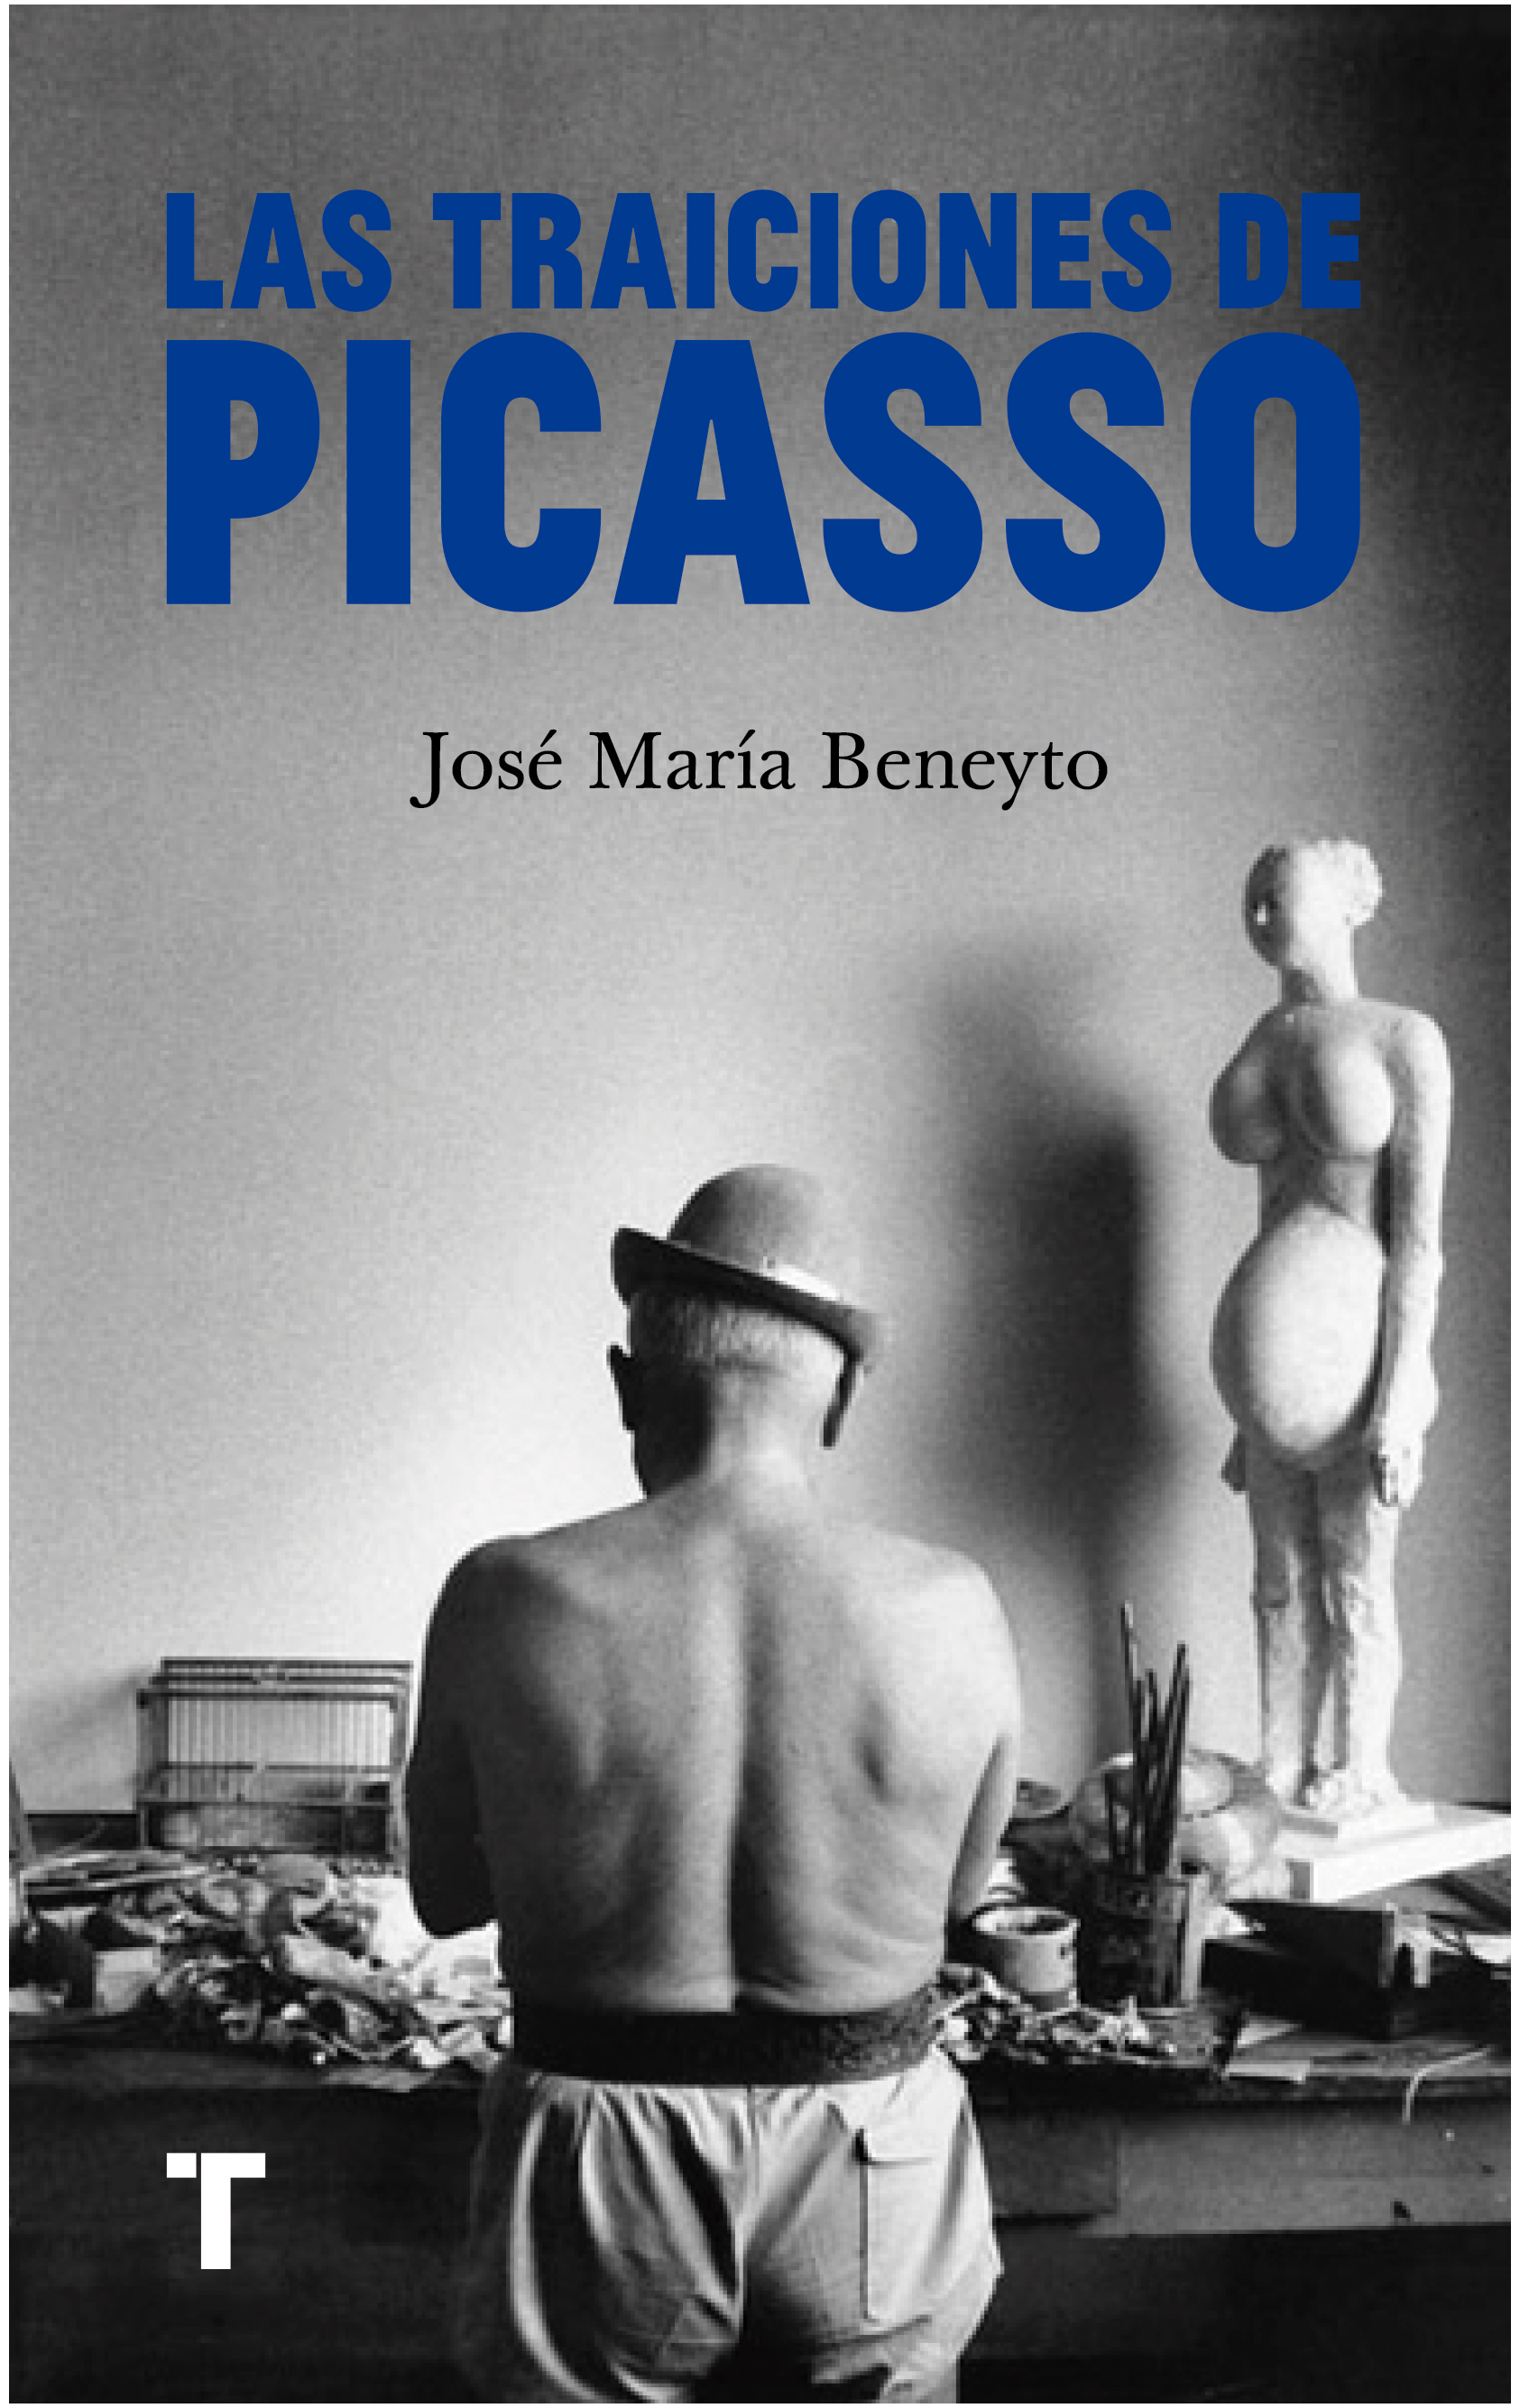 Las traiciones de Picasso